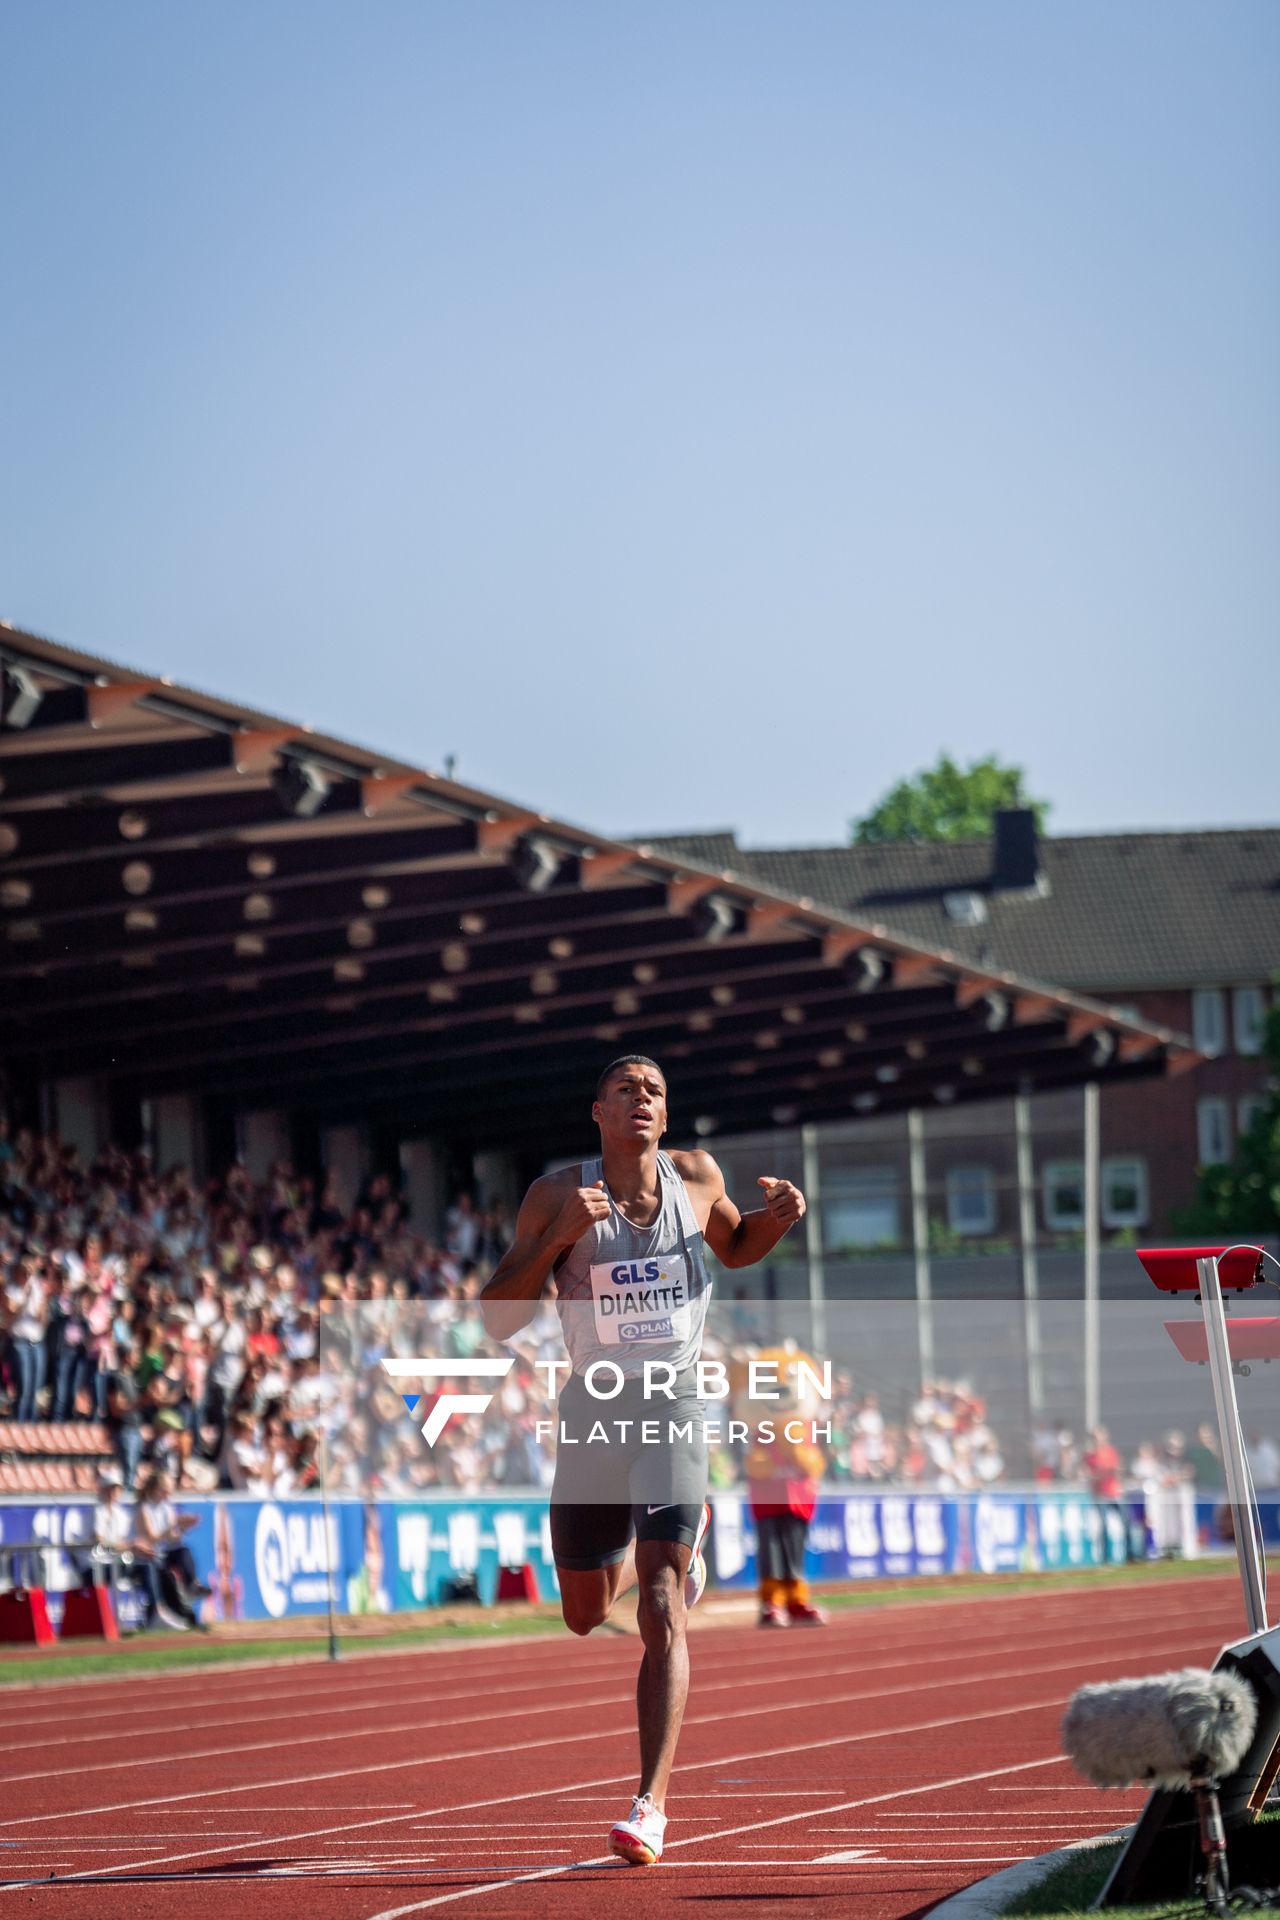 Malik Diakite (Hannover 96) ueber 1500m am 08.05.2022 beim Stadtwerke Ratingen Mehrkampf-Meeting 2022 in Ratingen